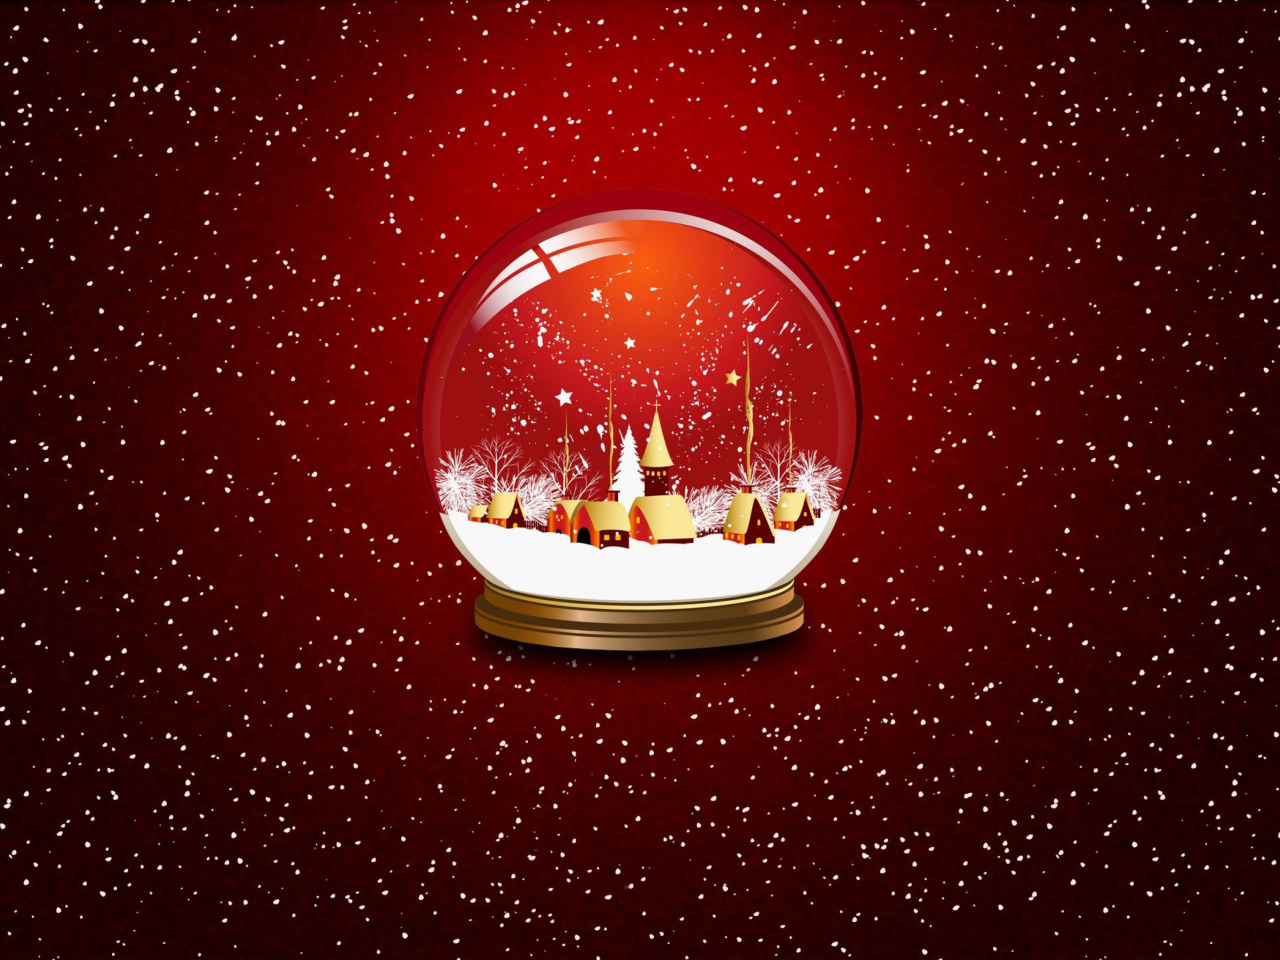 Das Christmas Souvenir Ball Wallpaper 1280x960